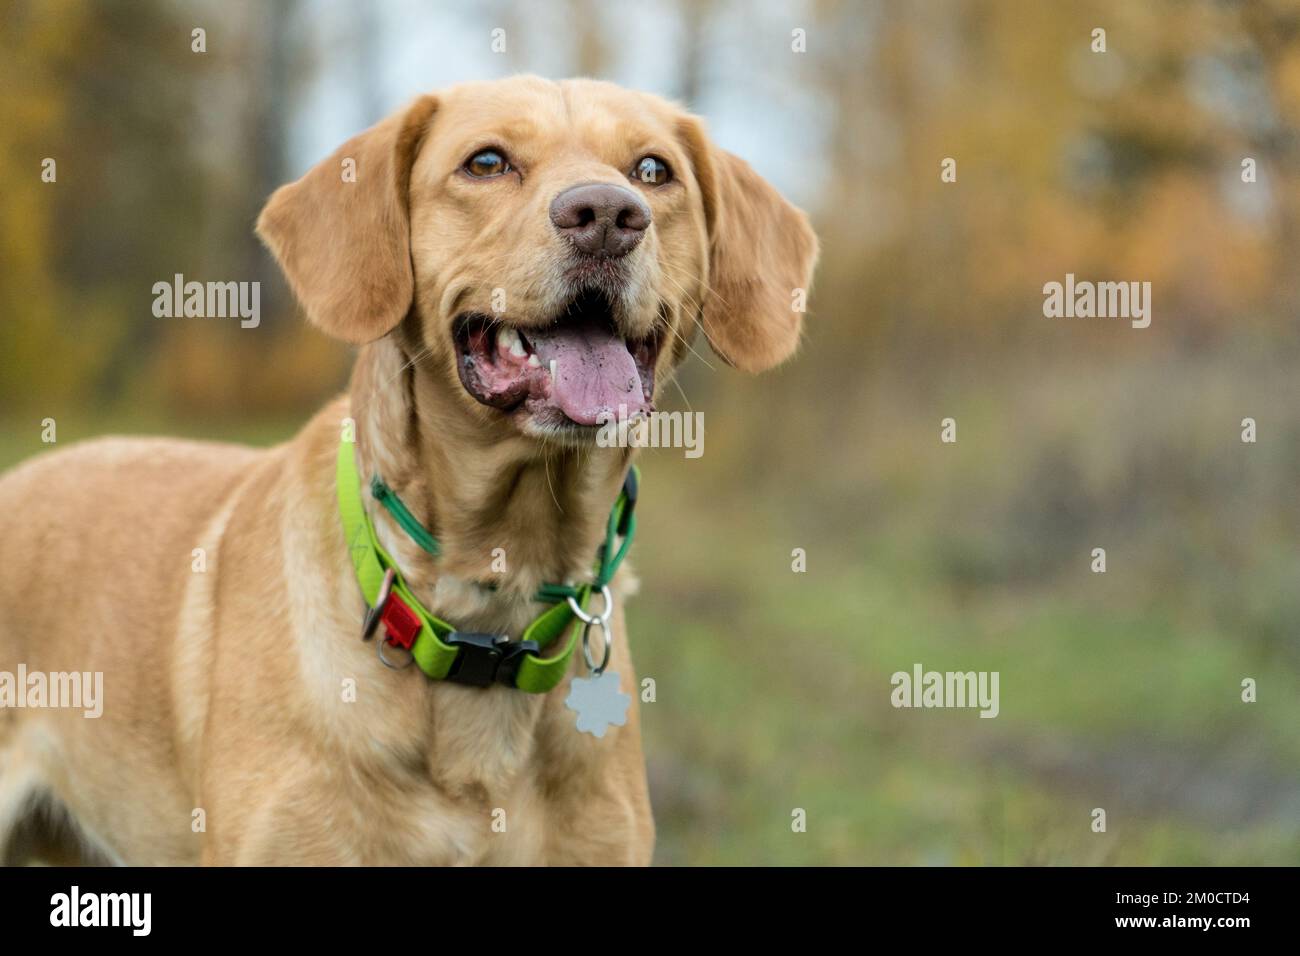 Portrait d'un chien en forme de foxy de race mixte dans la forêt en automne. Concept d'animaux de compagnie adopté. La pelouse. Chiens heureux jouant à l'extérieur. Banque D'Images